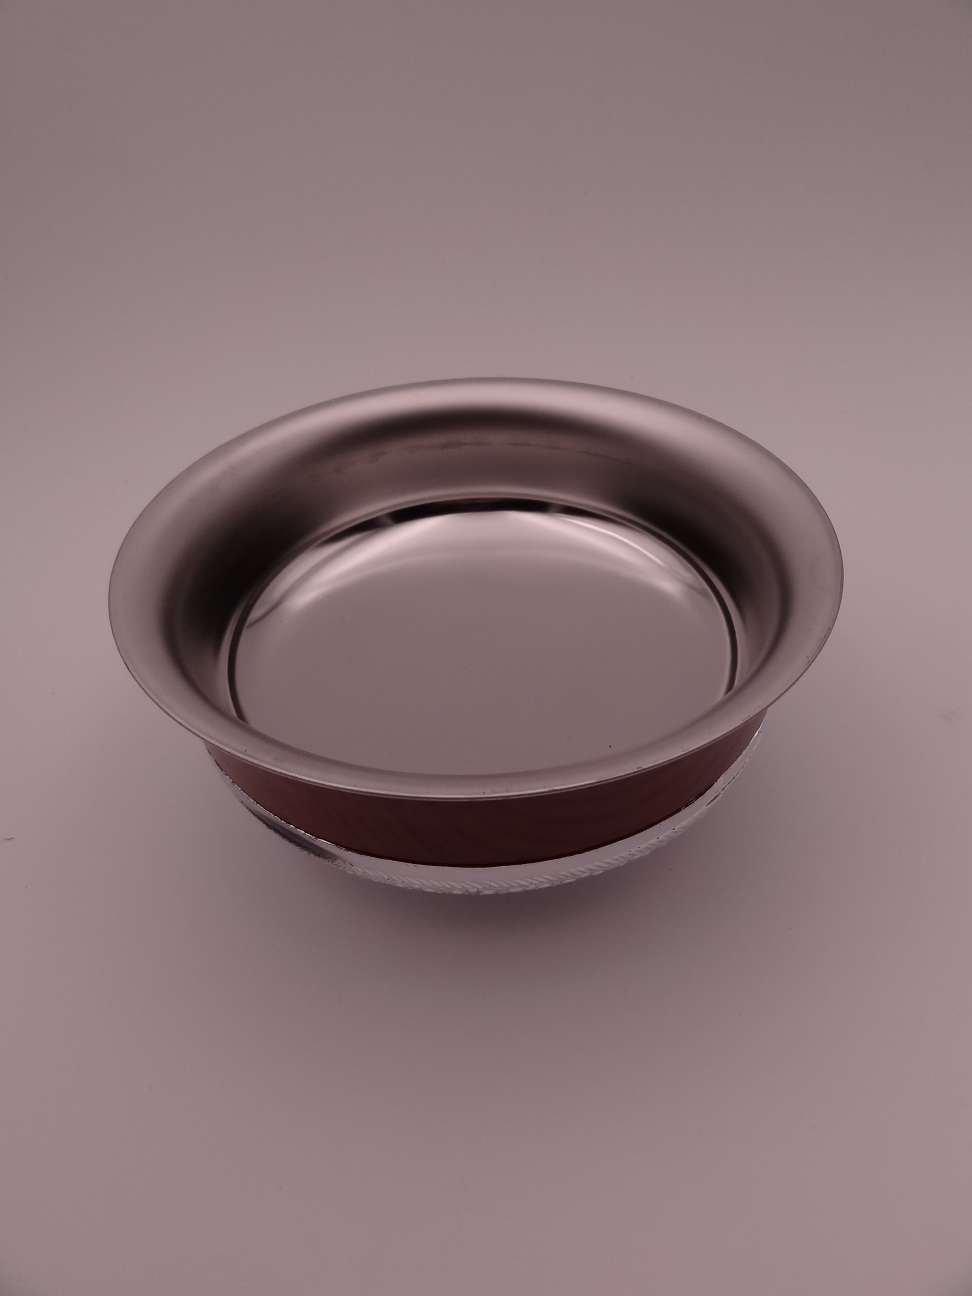 内蒙古敬酒碗 民族特色工艺品 双层仿银碗不锈钢餐具 酒杯详情图2